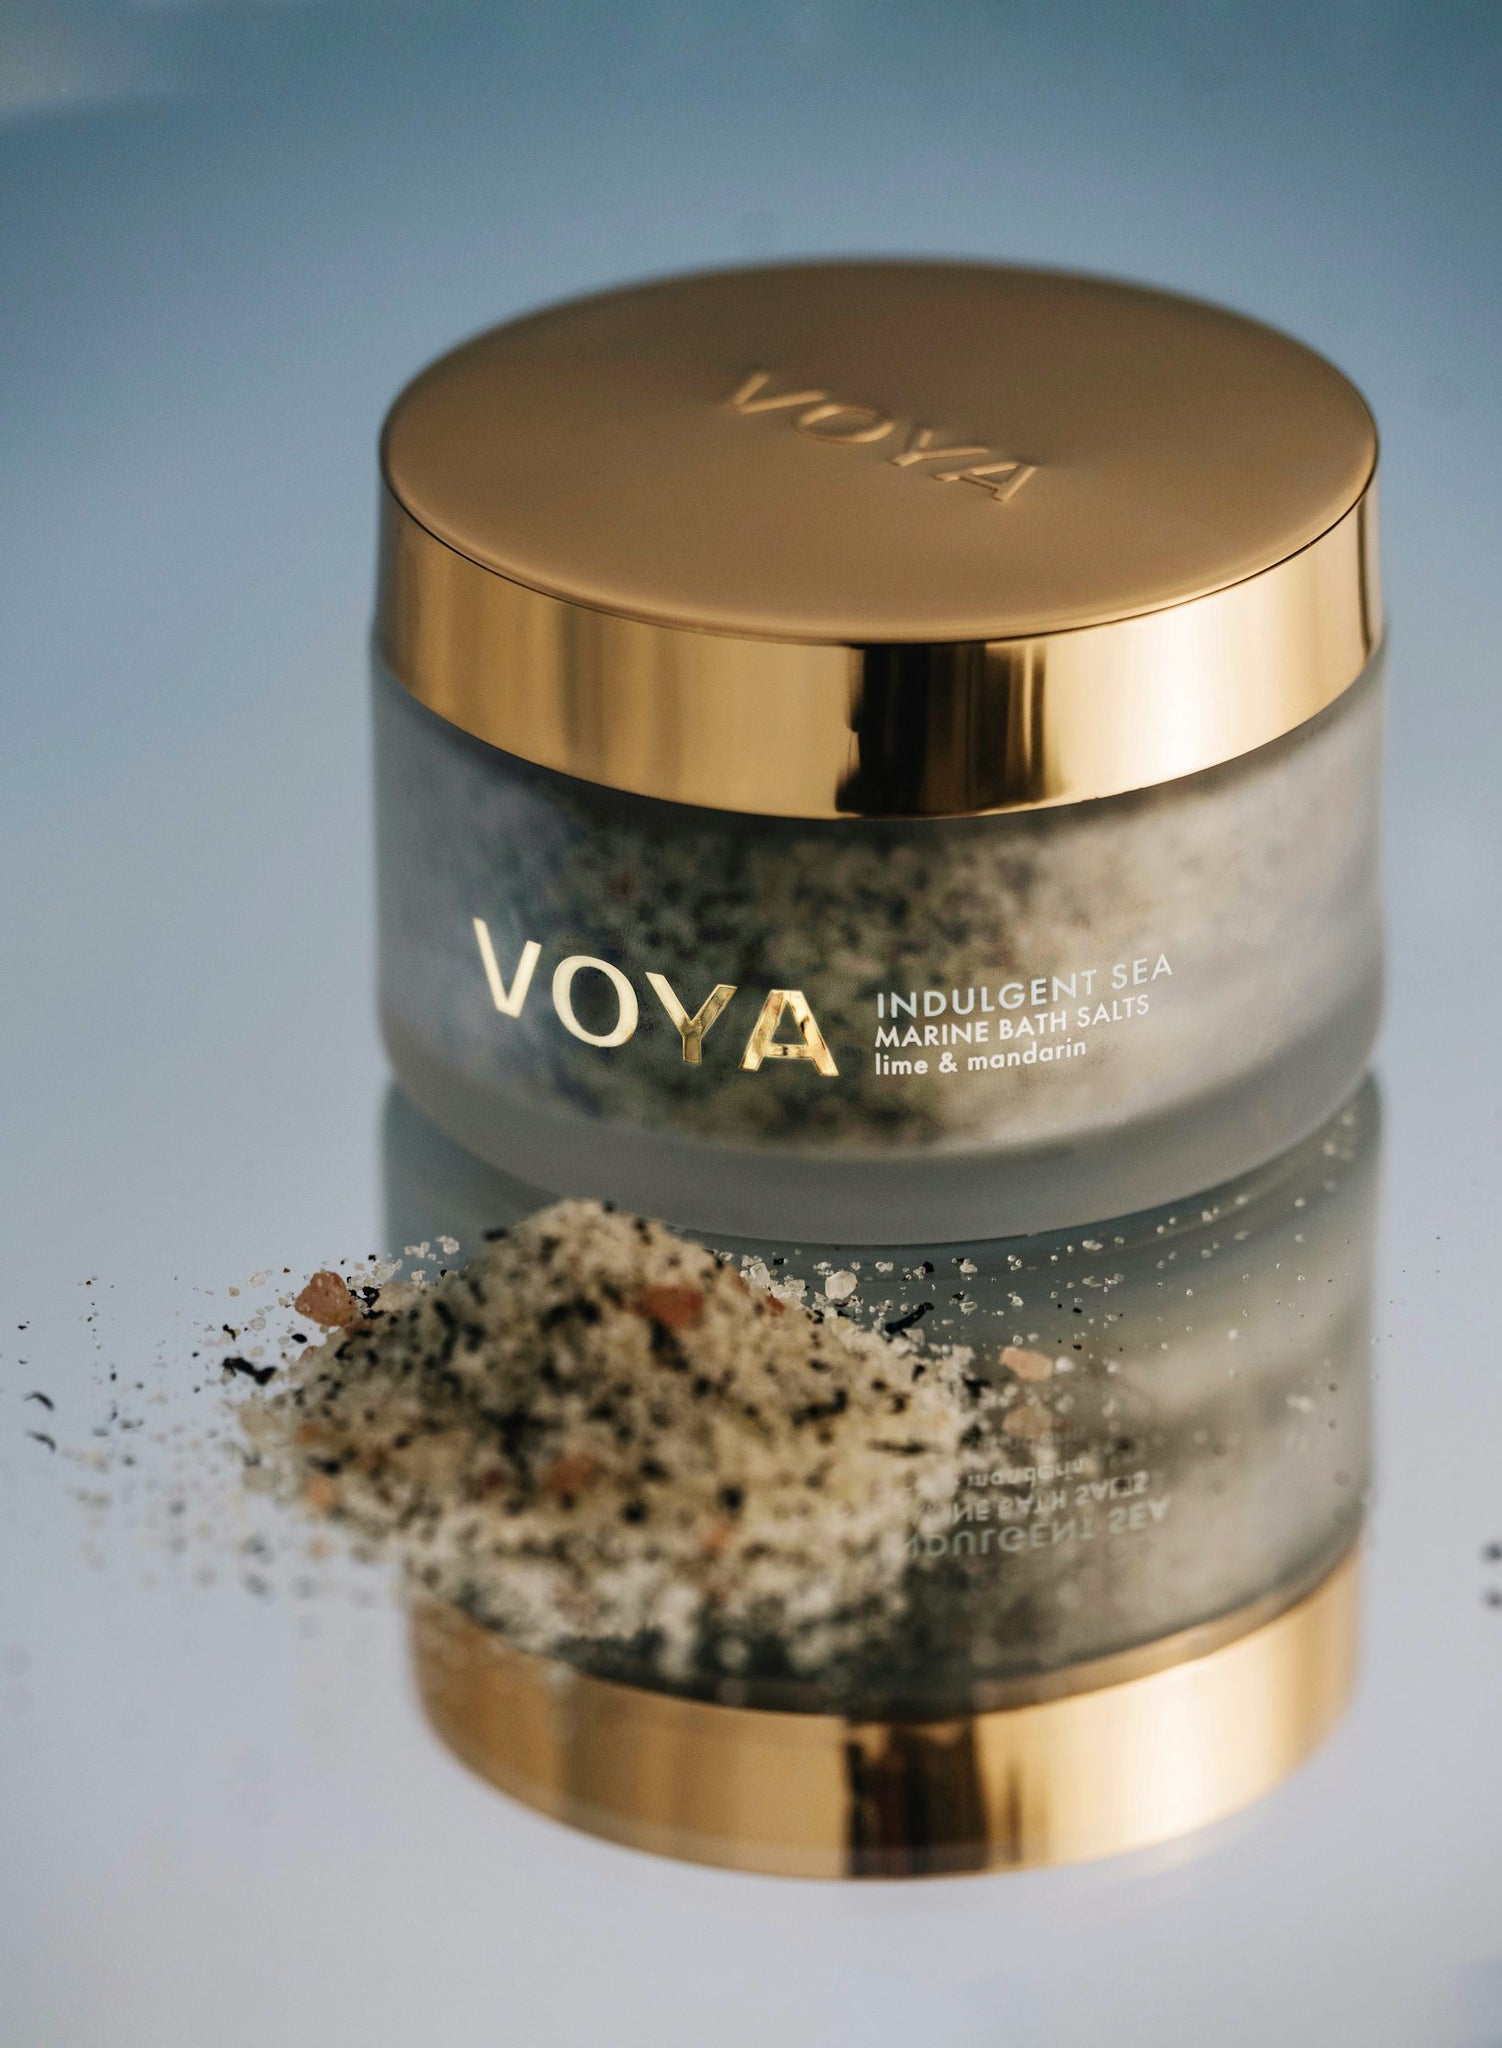 Voya launch new marine rich bath salts